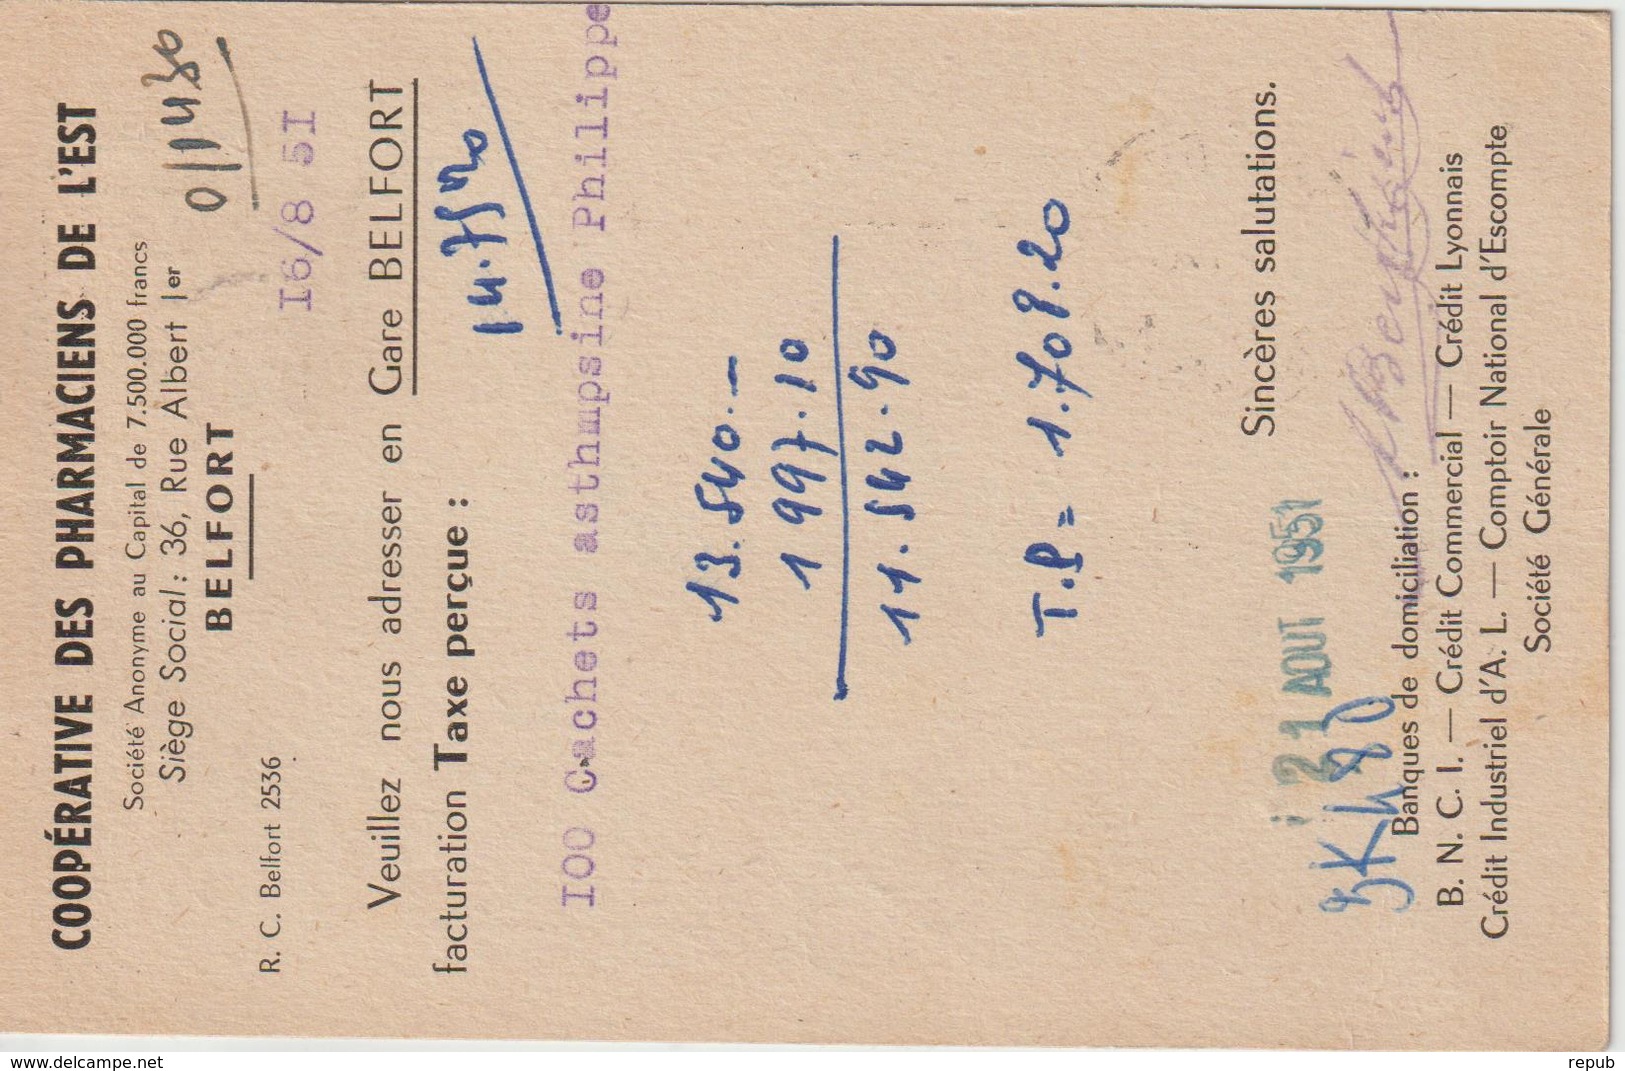 Carte Commerciale 1951 De Belfort Pour St Brieuc Oblit. Krag - 1921-1960: Modern Period